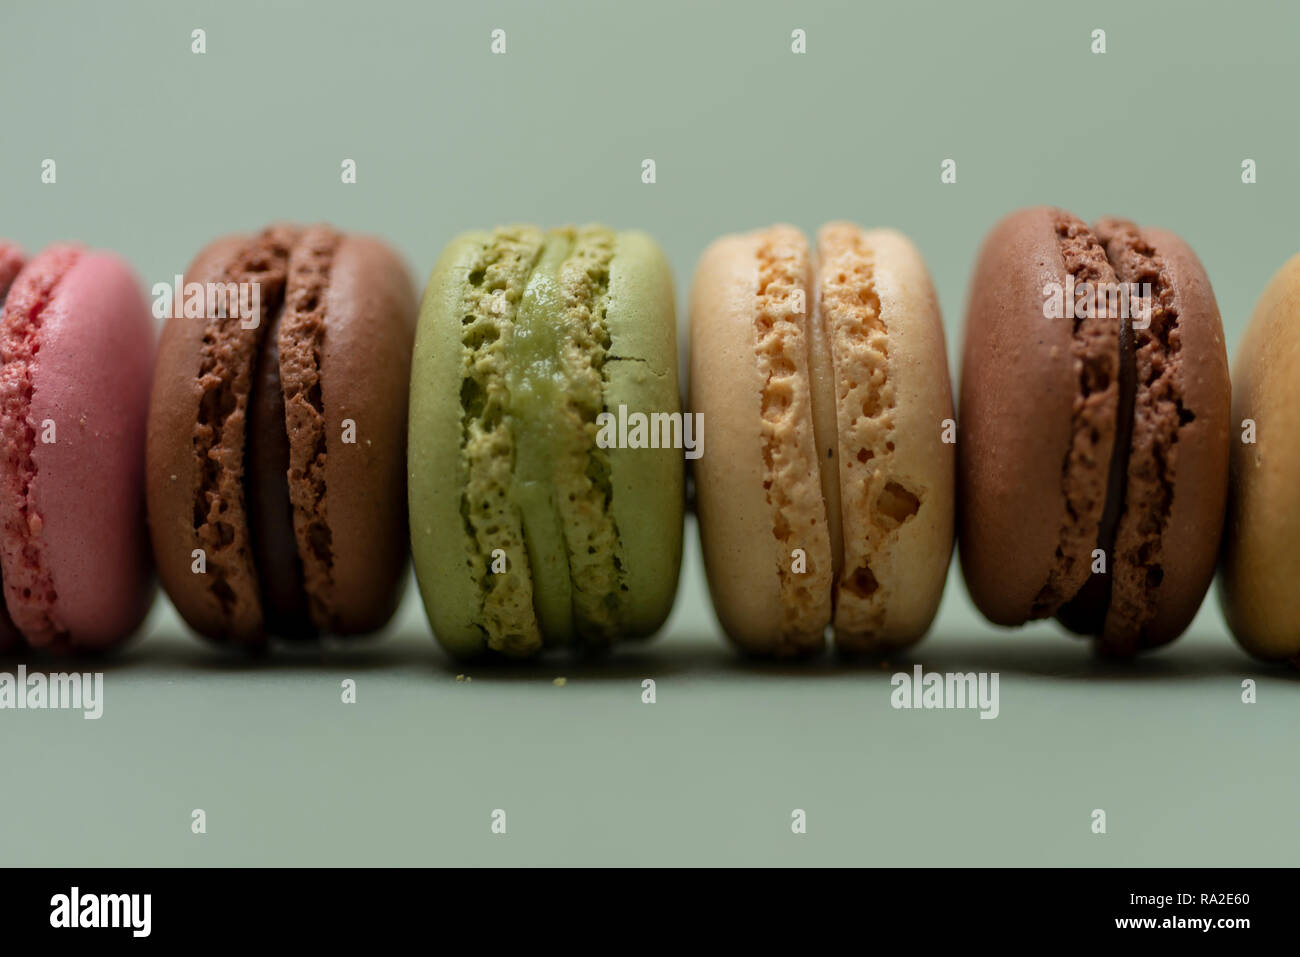 Vintage pastellfarbenen Französische Makronen oder Macarons auf grünem Hintergrund Stockfoto